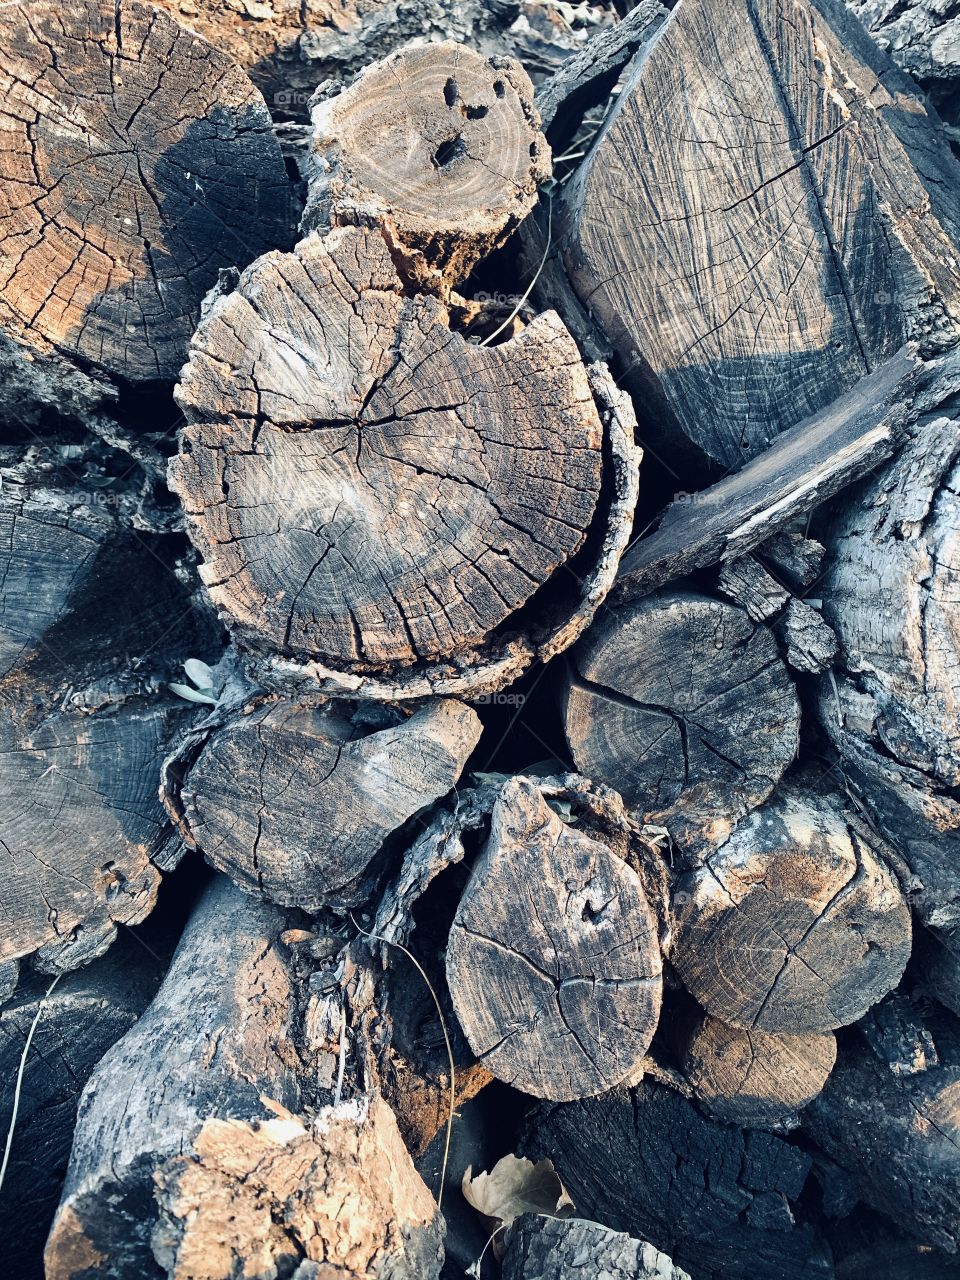 Ends of cut logs in sunlight